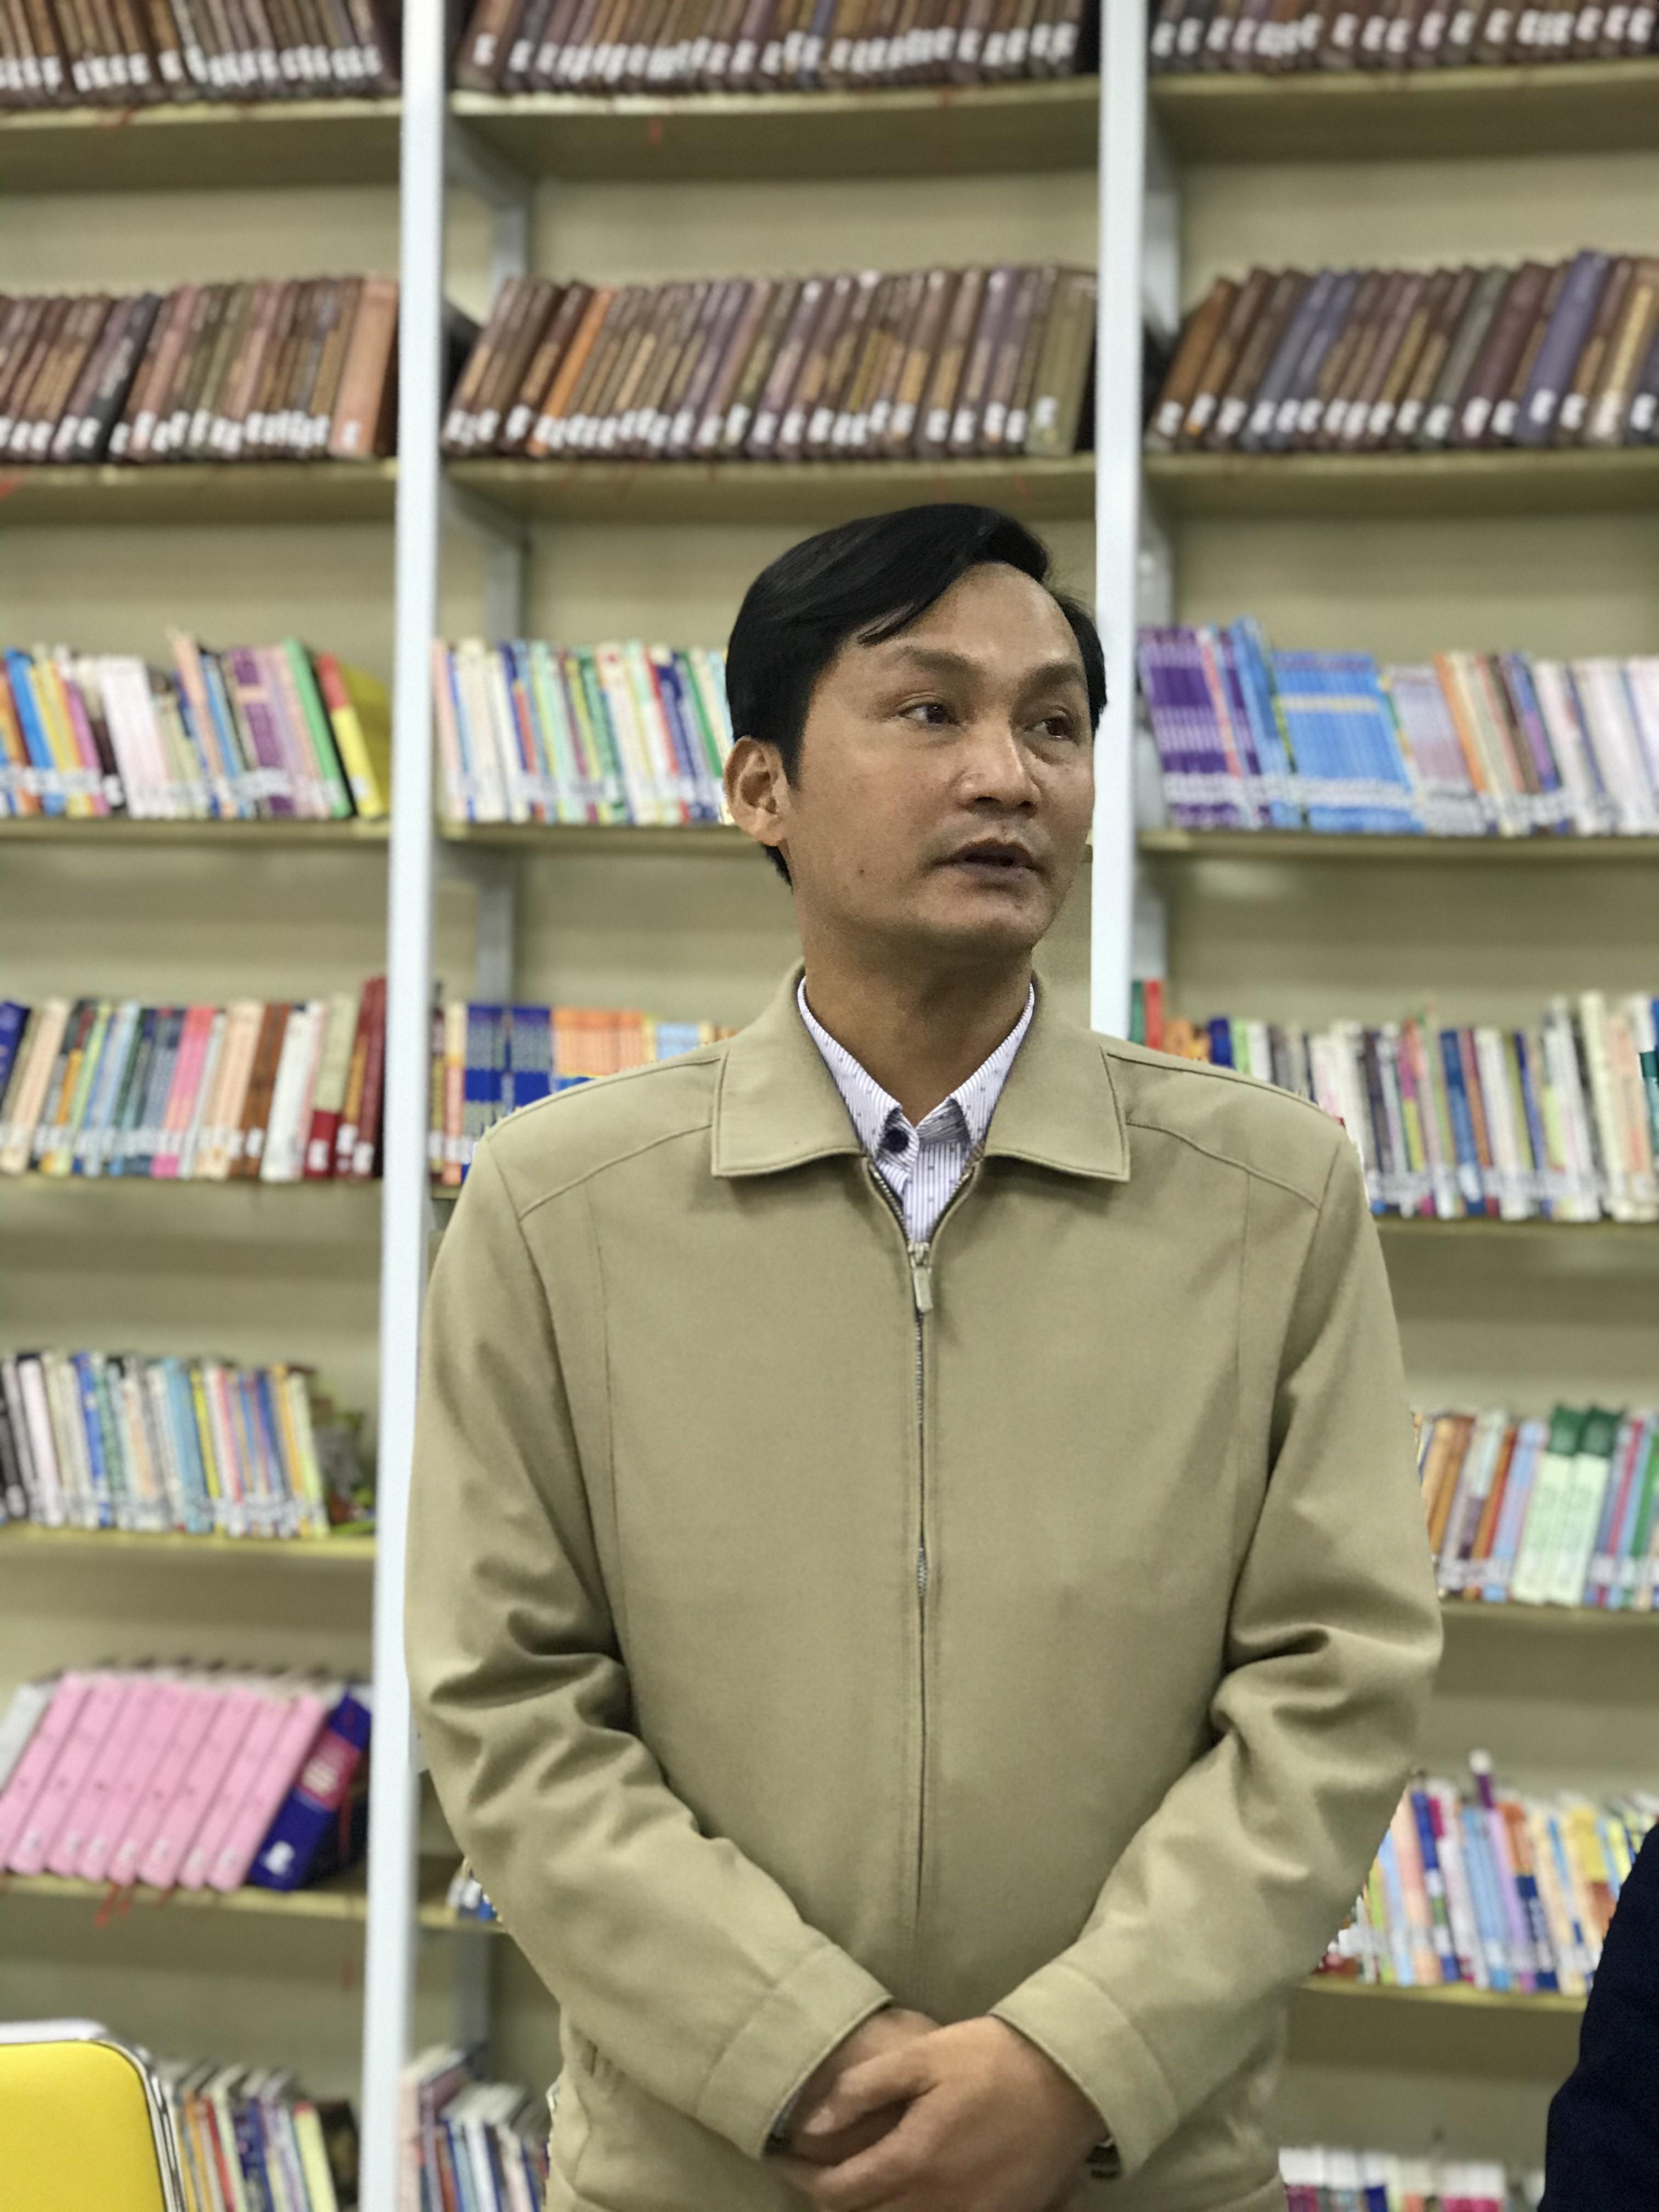 Tọa đàm: Giải pháp sử dụng hiệu quả Thư viện miễn phí quận Lê Chân - 2